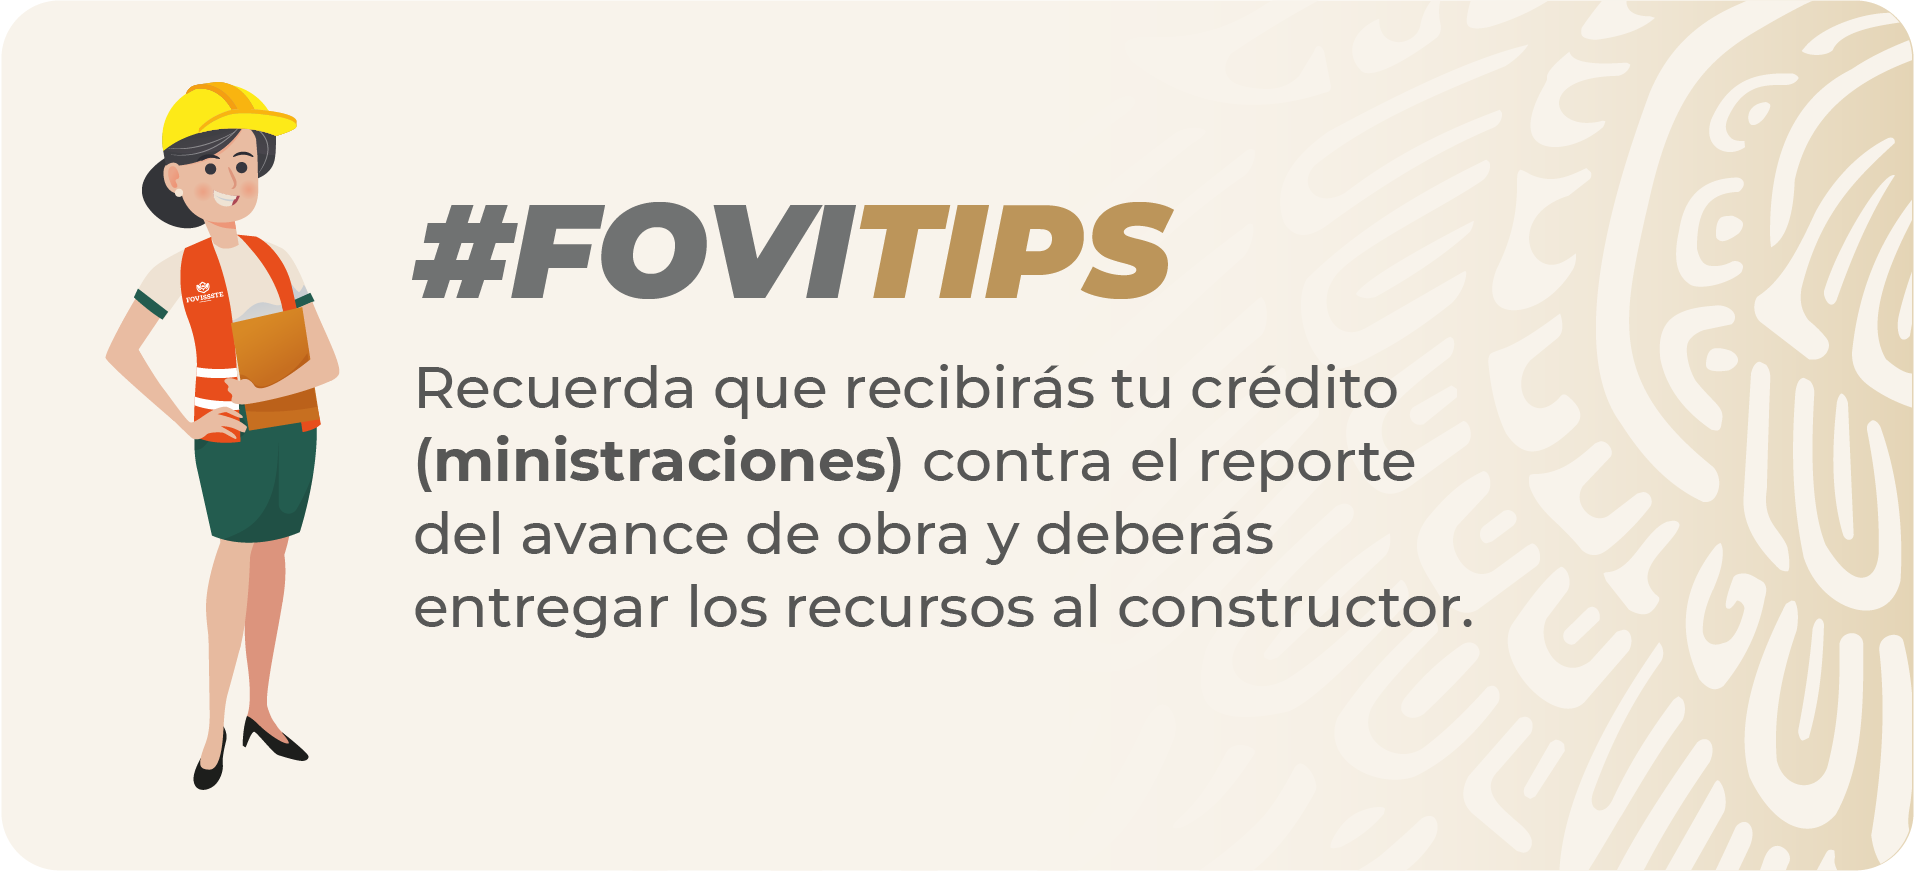 FOVITIPS Recuerda que recibirás tu crédito (ministraciones) contra el reporte del avance de obra y deberás entregar los recursos al constructor